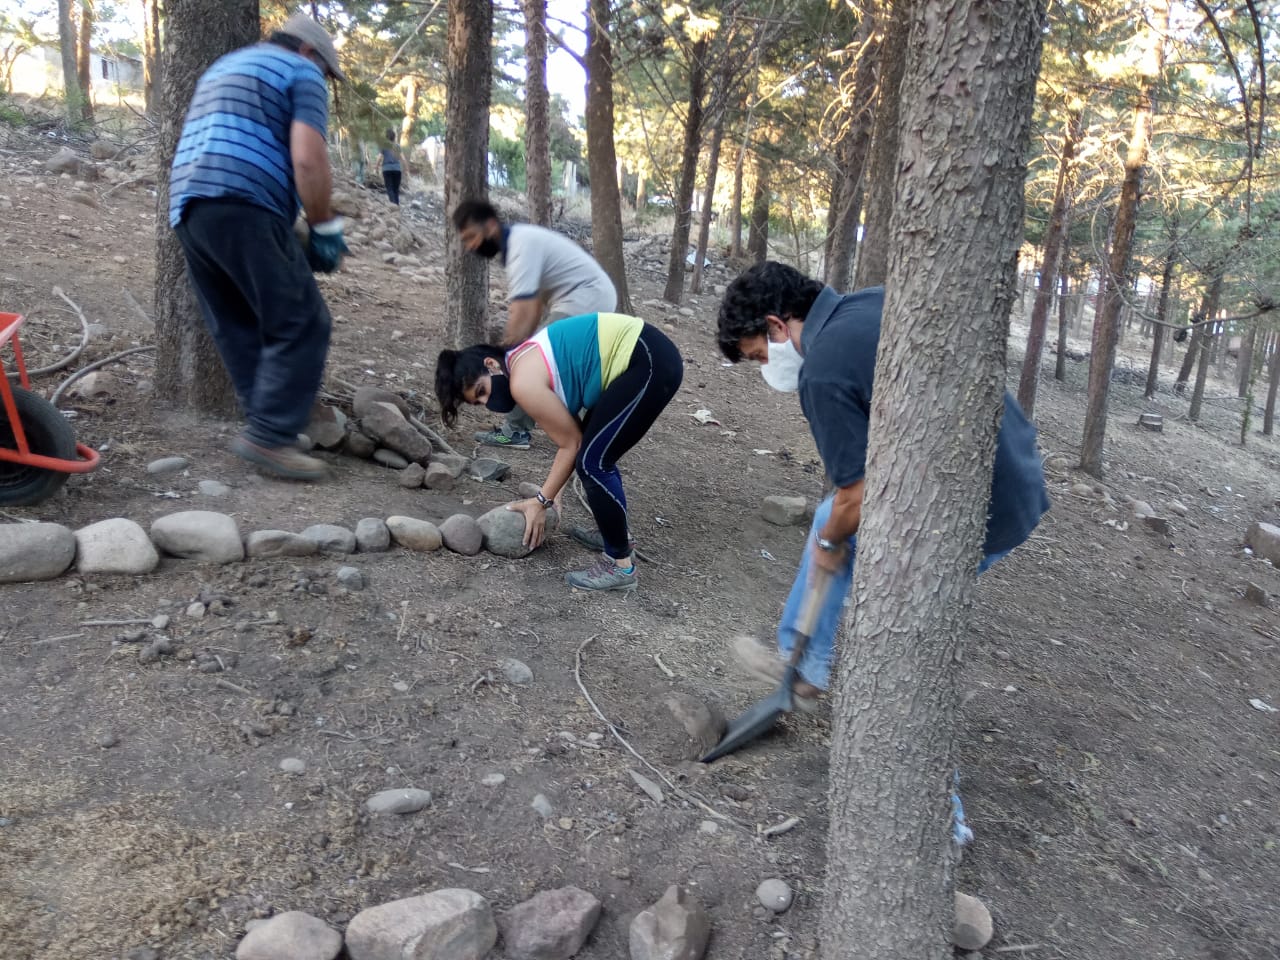 Tras reunirse con el intendente, los vecinos pusieron manos a la obra para comenzar con la puesta en valor del bosque comunal de Andacollo. (foto: gentileza)